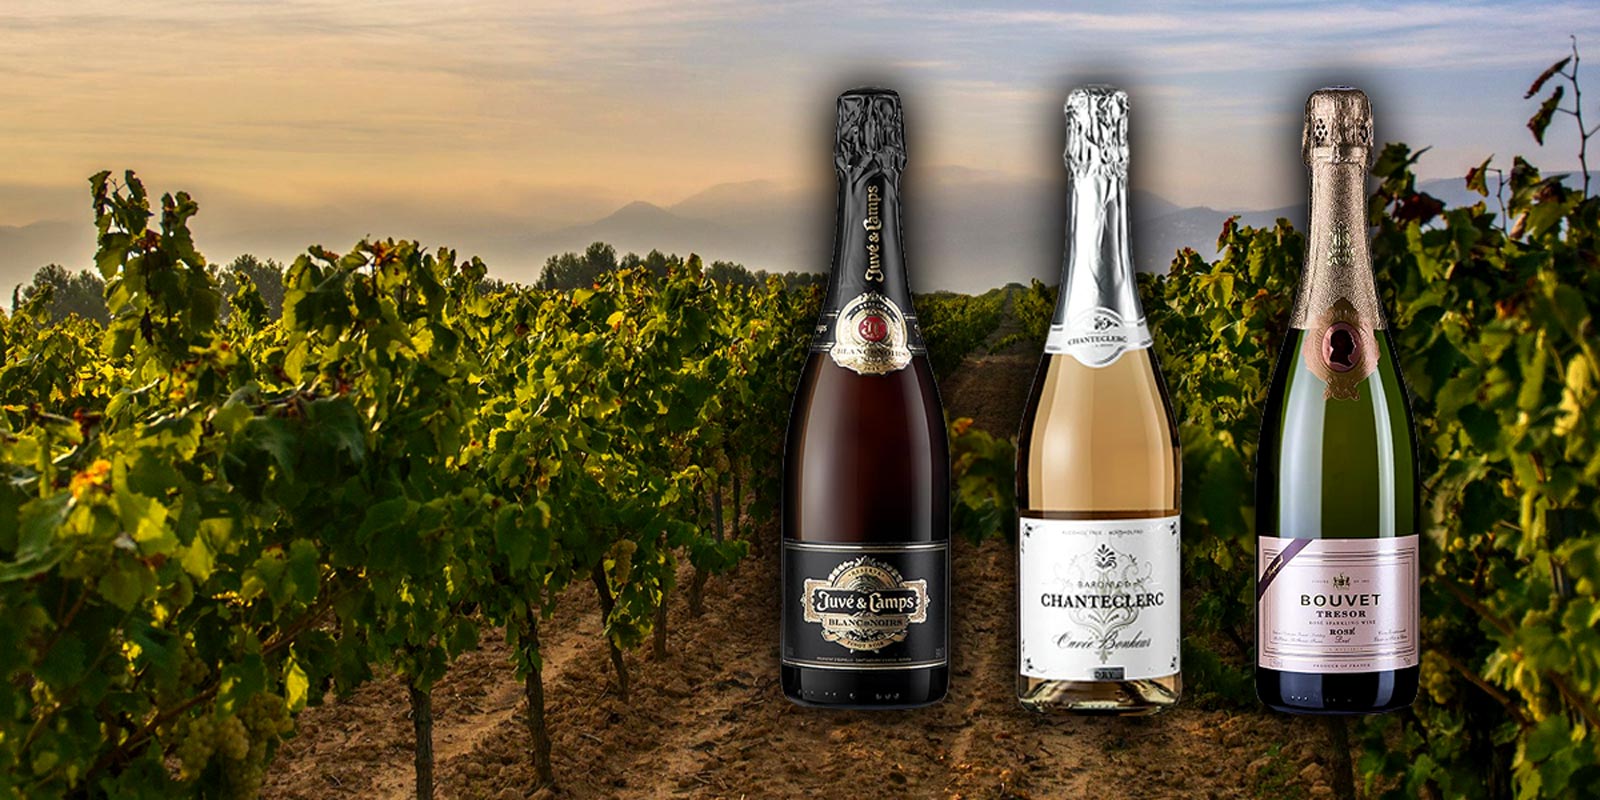 Cremant i francuskie wino musujace Cremant de Loire nazywany jest takze Champangerem Loary. Podobnie jak szampan, kremant wytwarzany jest w procesie fermentacji butelkowej.